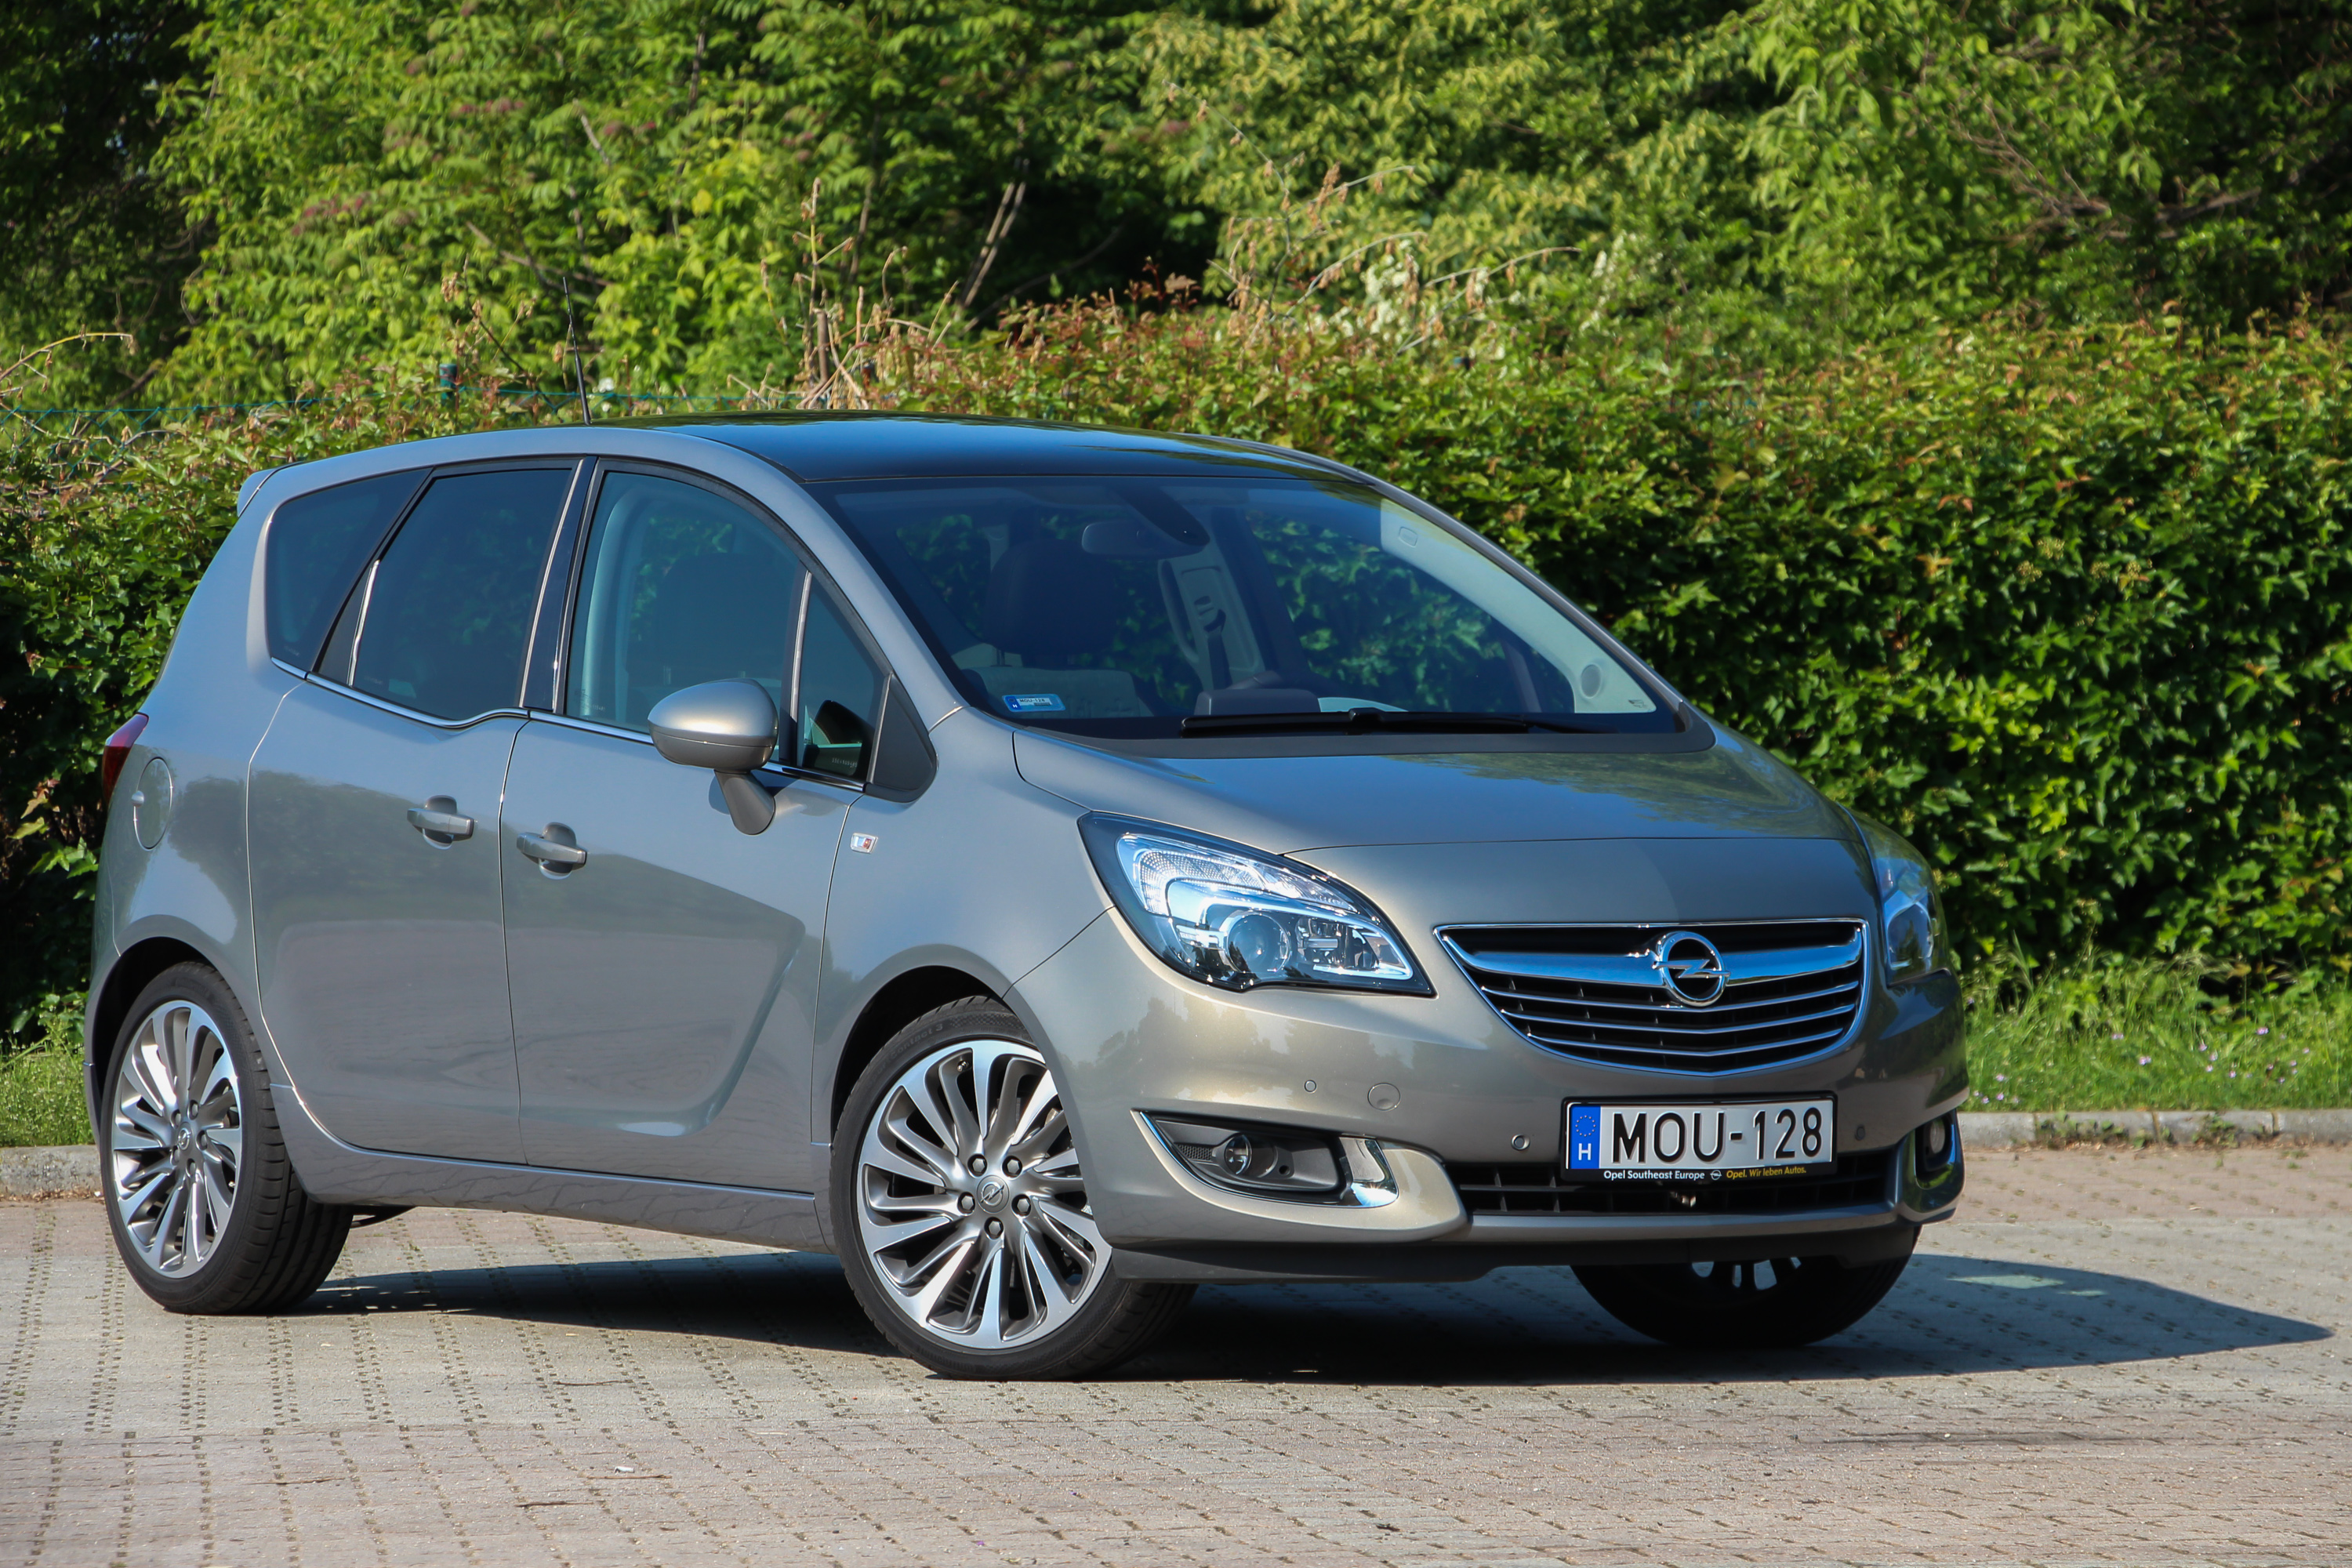 Vezetni jó! Opel Meriva 1.6 CDTI teszt - Autónavigátor.hu